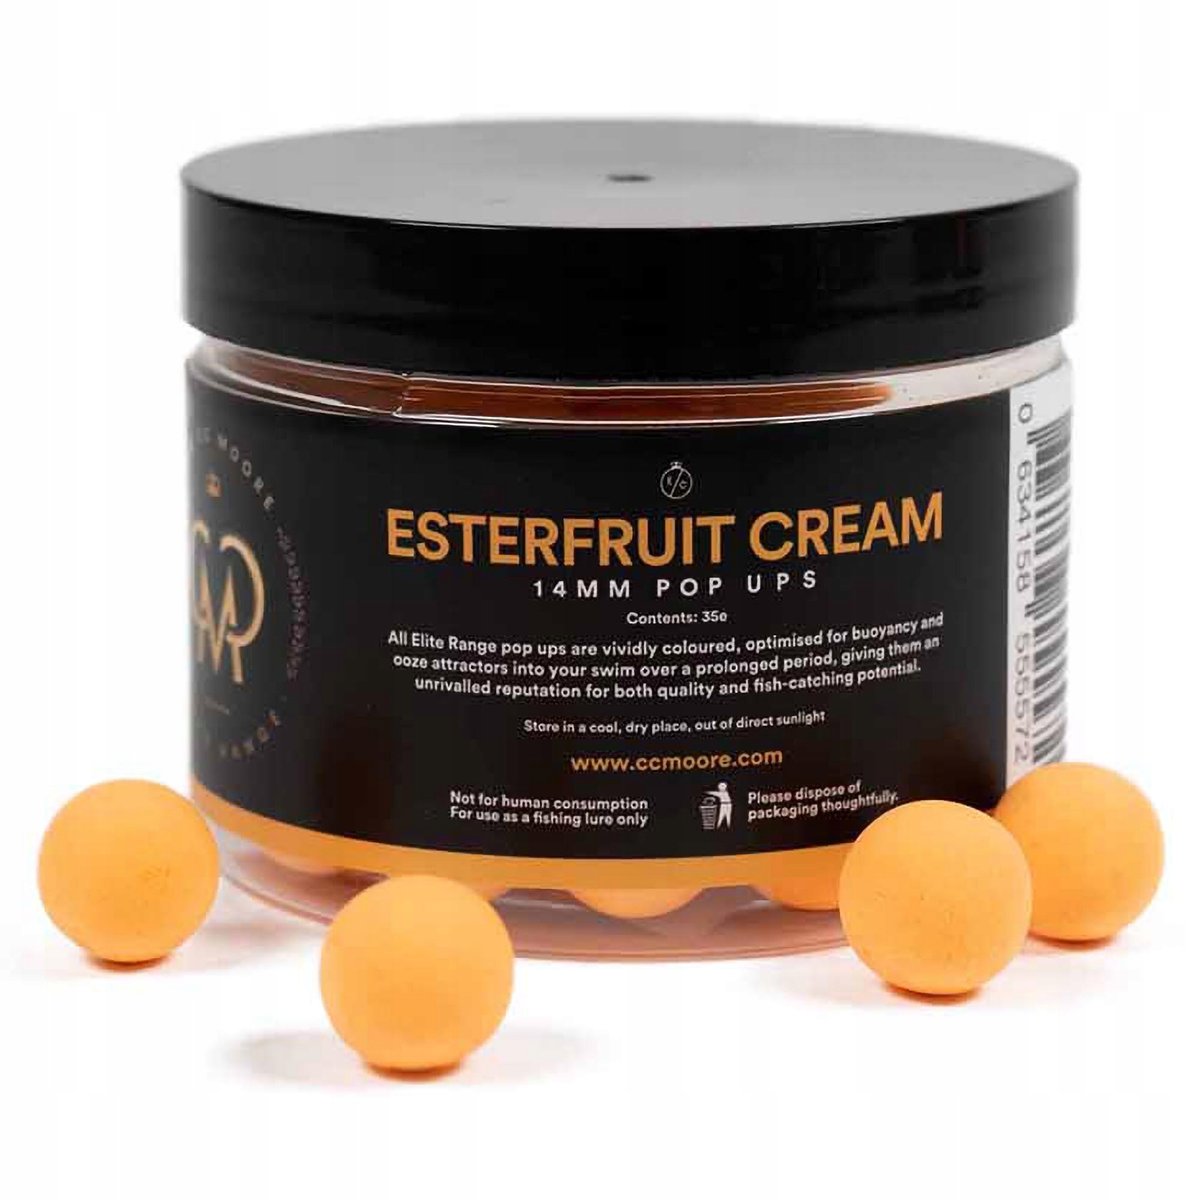 Zdjęcia - Zanęta / przynęta CC Moore Przynęta Kulki Pływające  Elite Range Pop Up Esterfruit Cream 14 M 